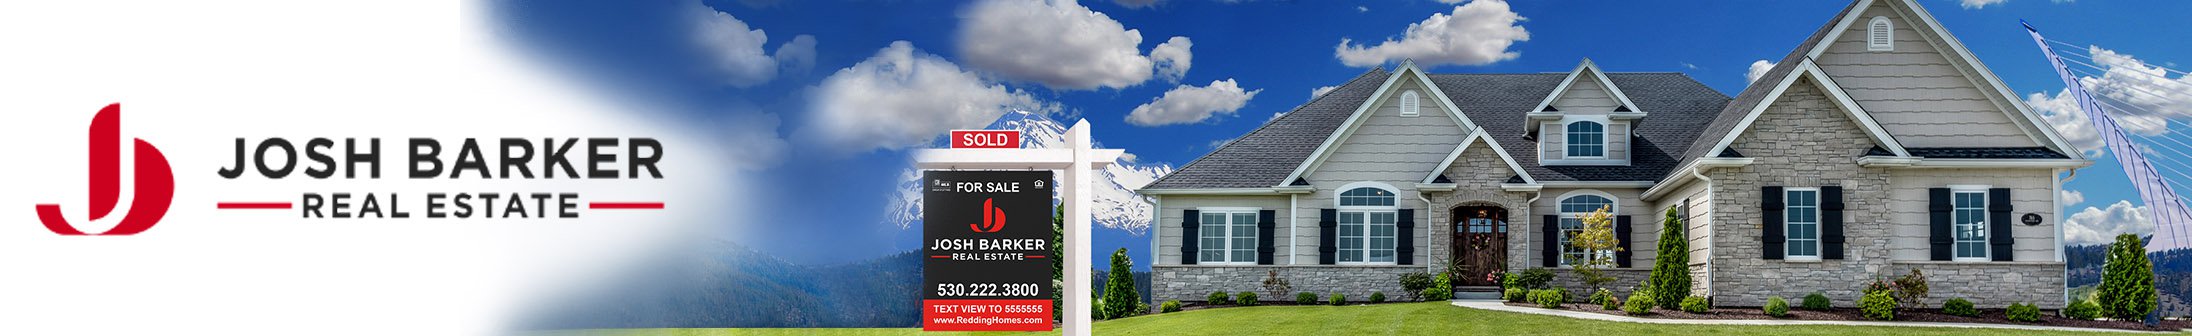 Josh Barker Real Estate Advisors